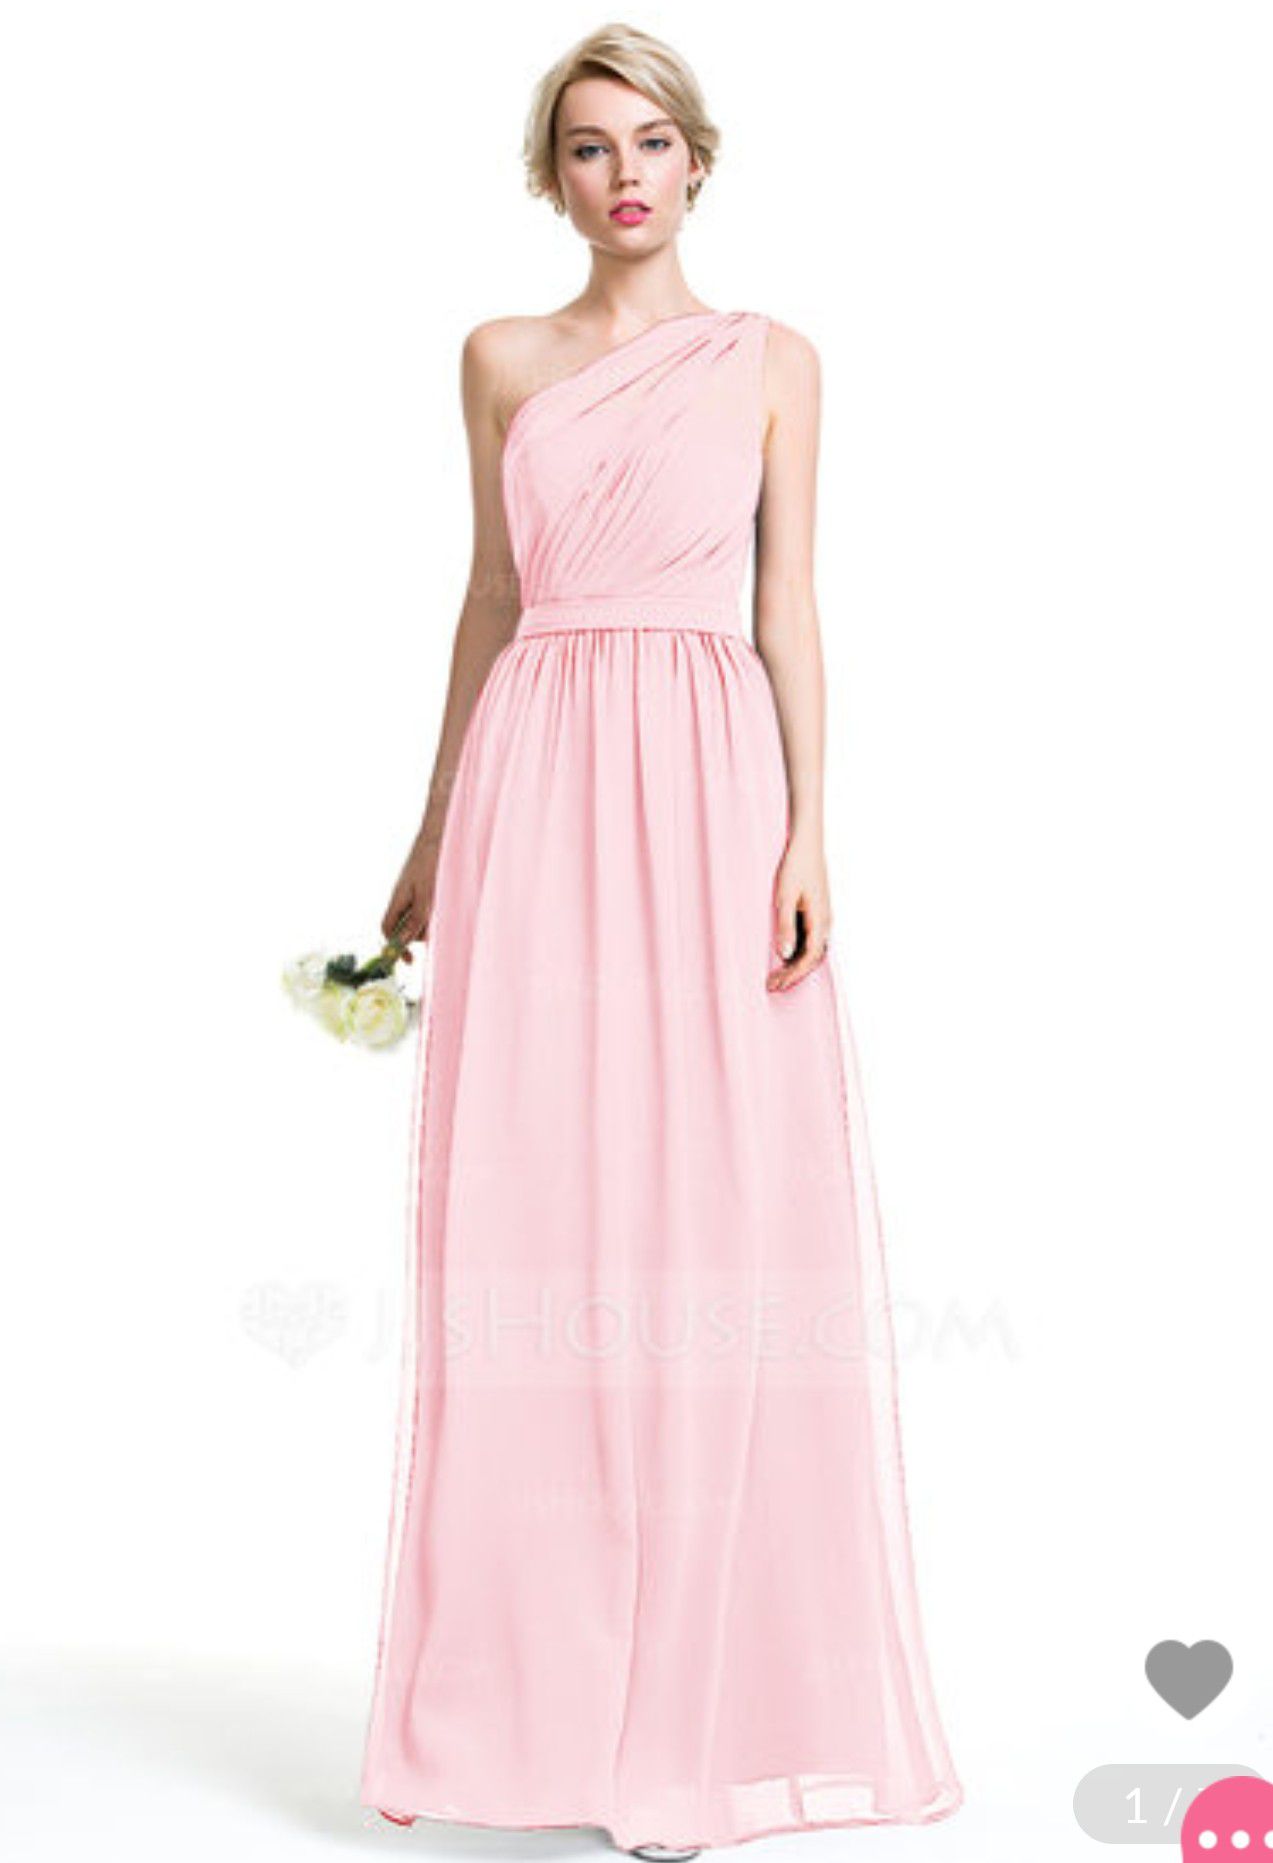 Blush Pink Formal Dress